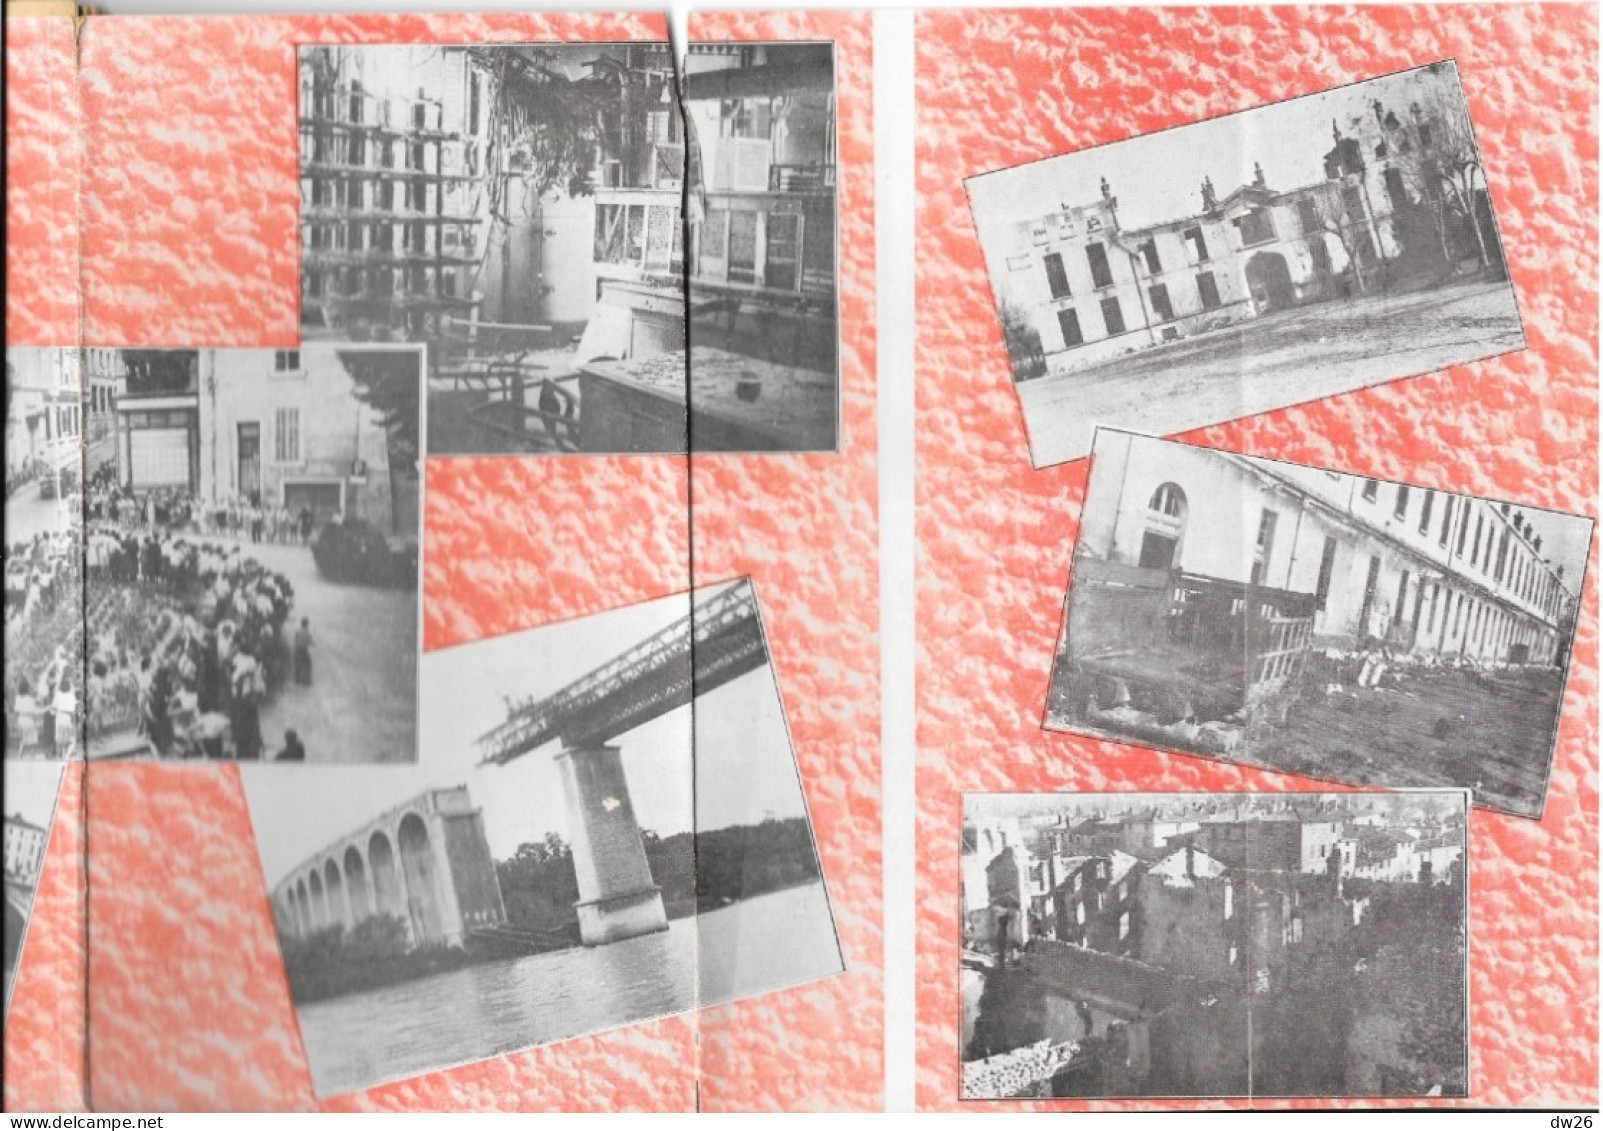 Livre D'Histoire De La Guerre: La Libération De Nos Villes (Romans, Bourg De Péage) Août 1944 - Photos Paul Deval - Guerre 1939-45